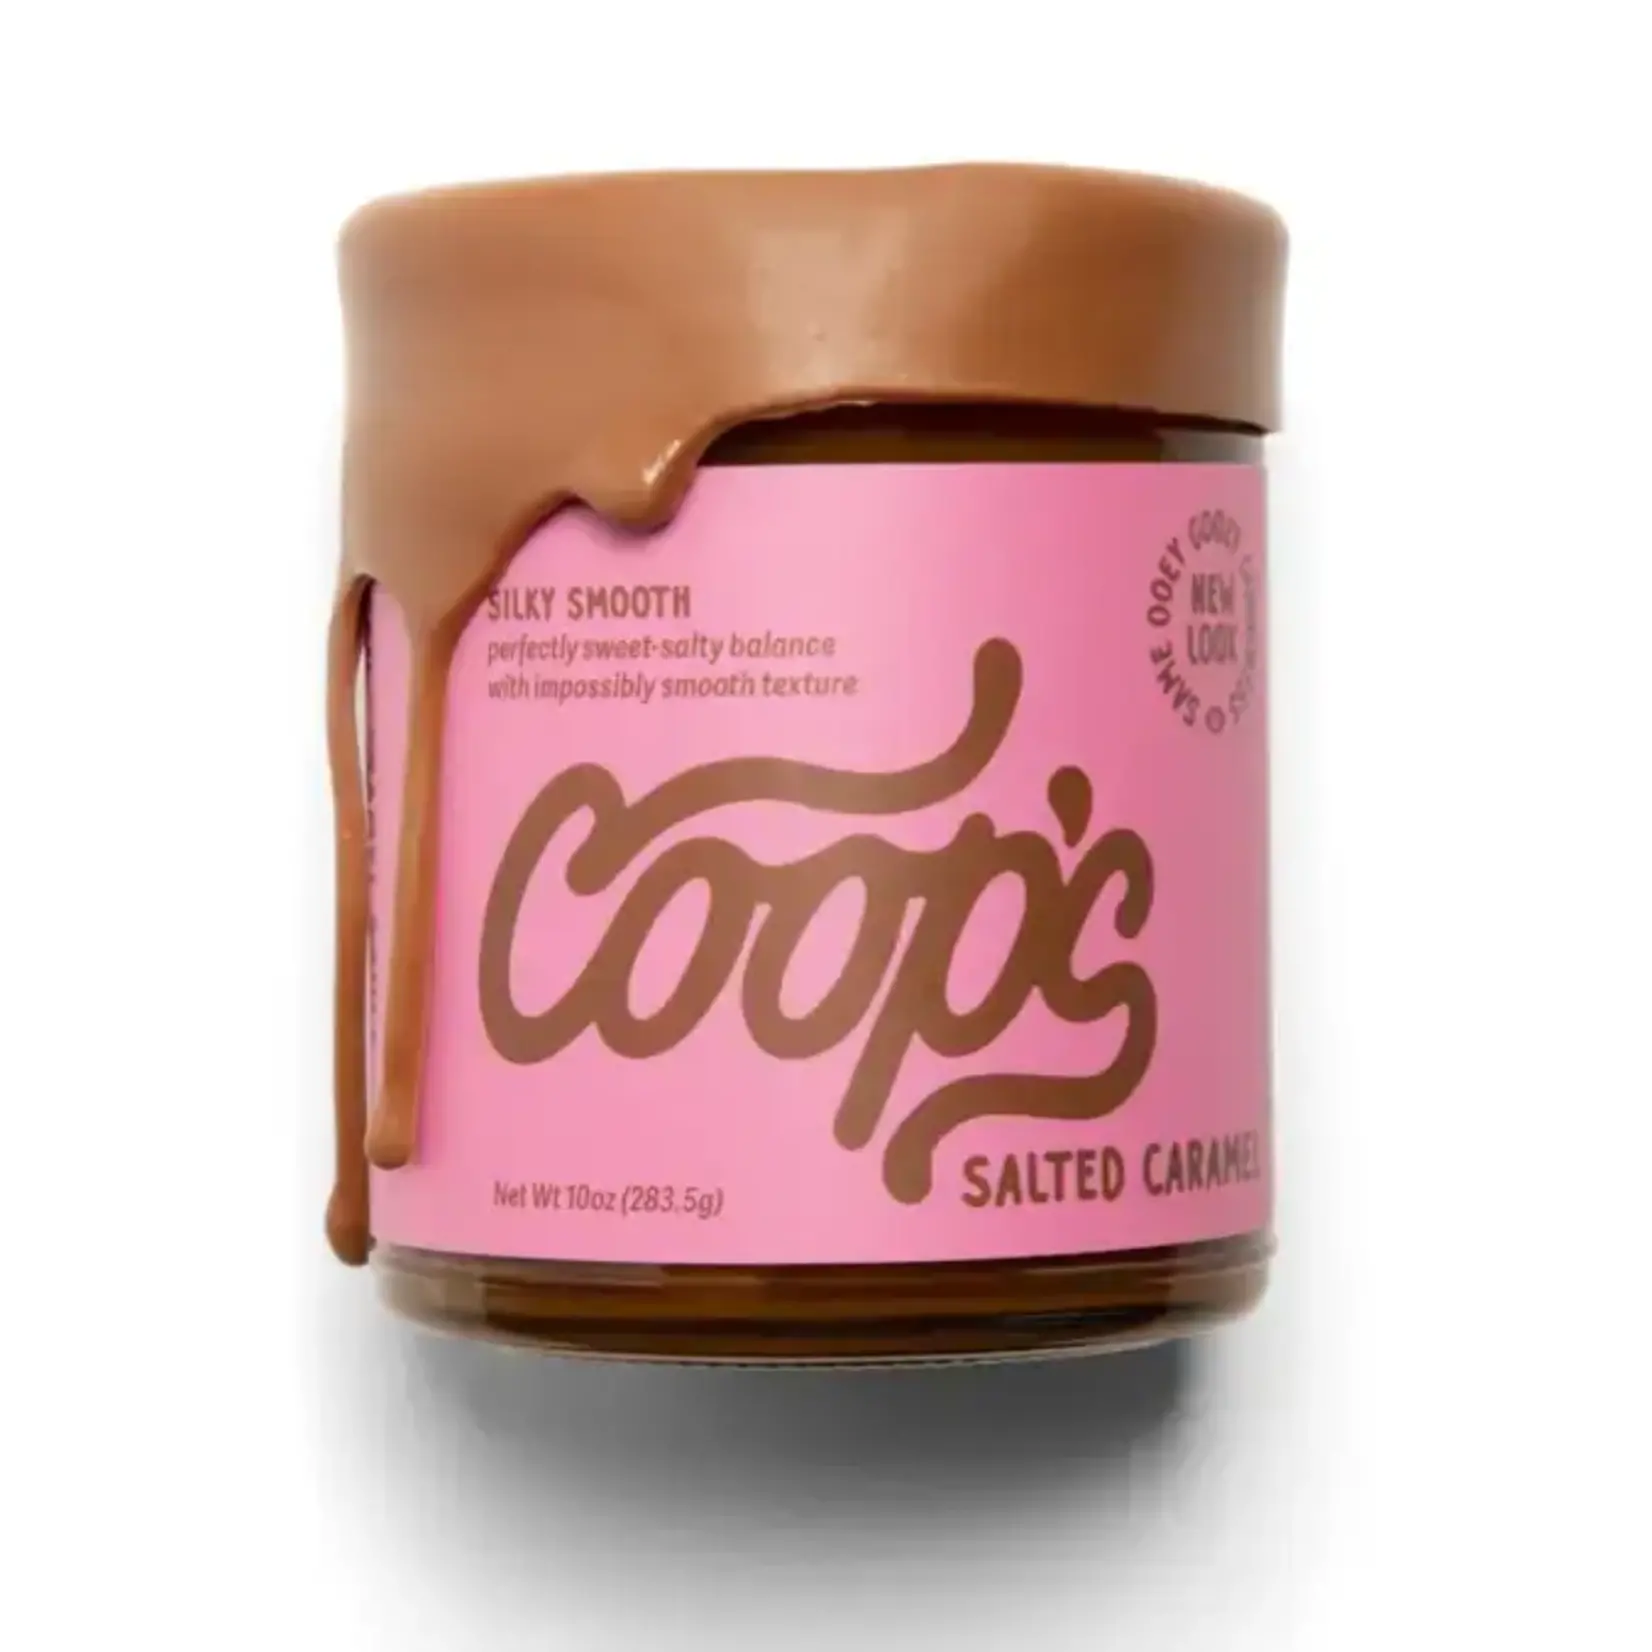 Coop's Coop's